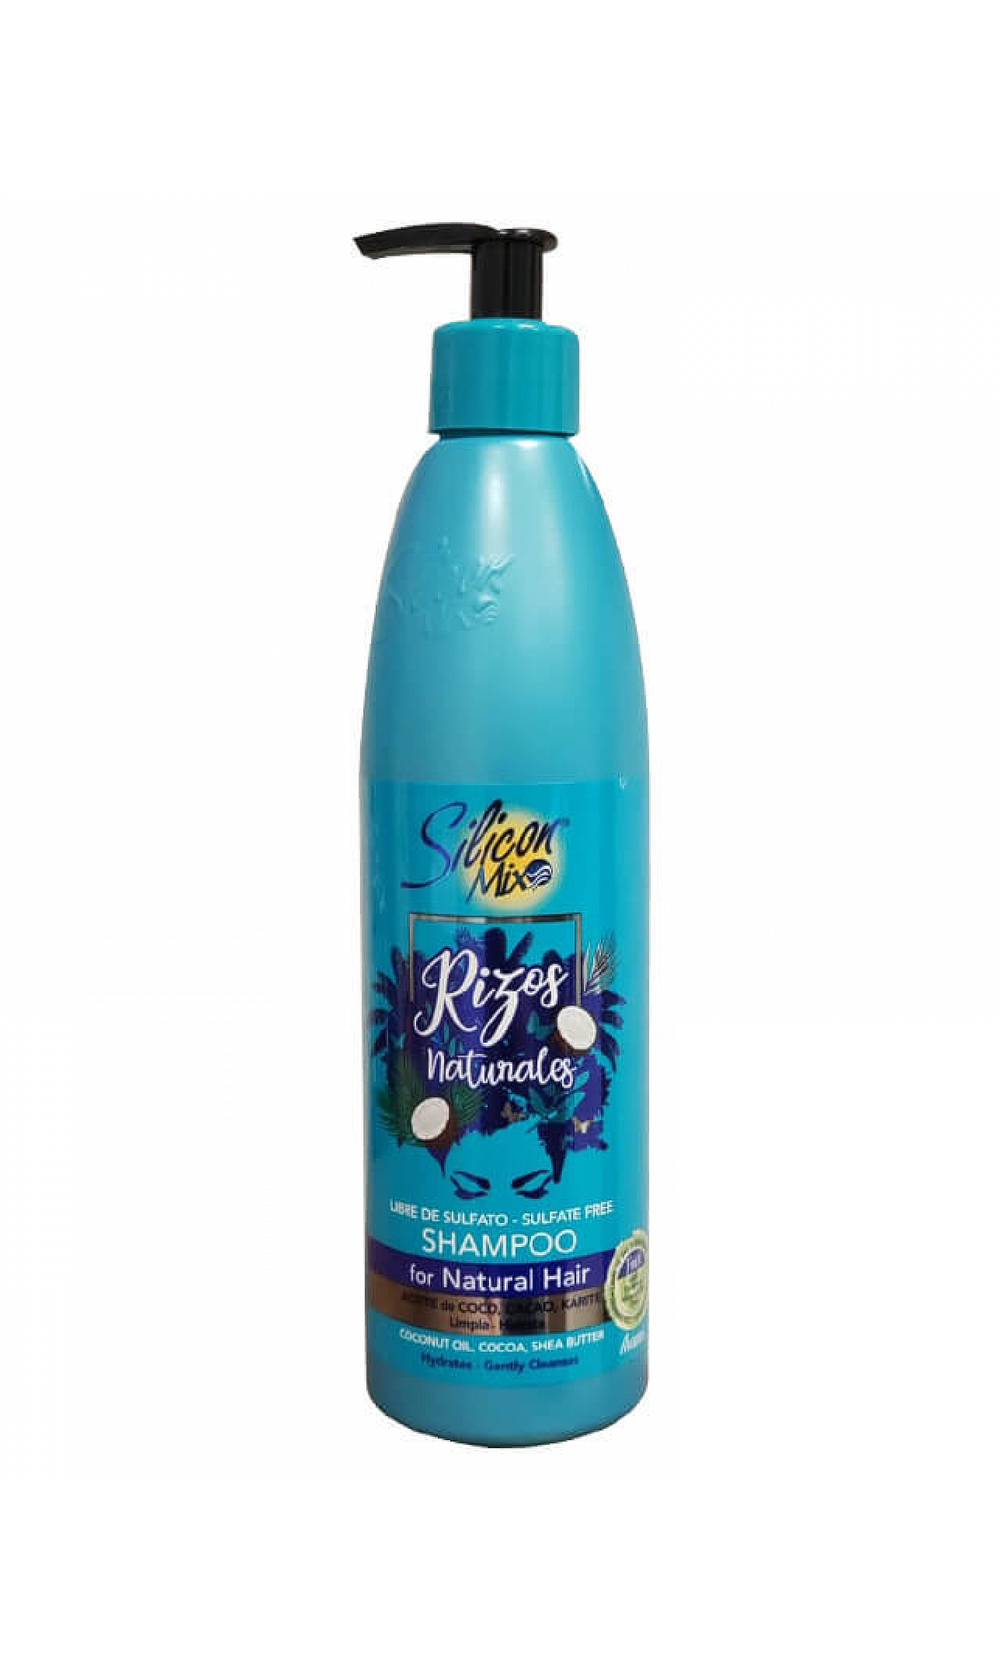 Silicon Mix Shampoo Rizos Naturales Limpia profundamente el cabello  ondulado, rizado y afro. — Latinas Beauty Supply